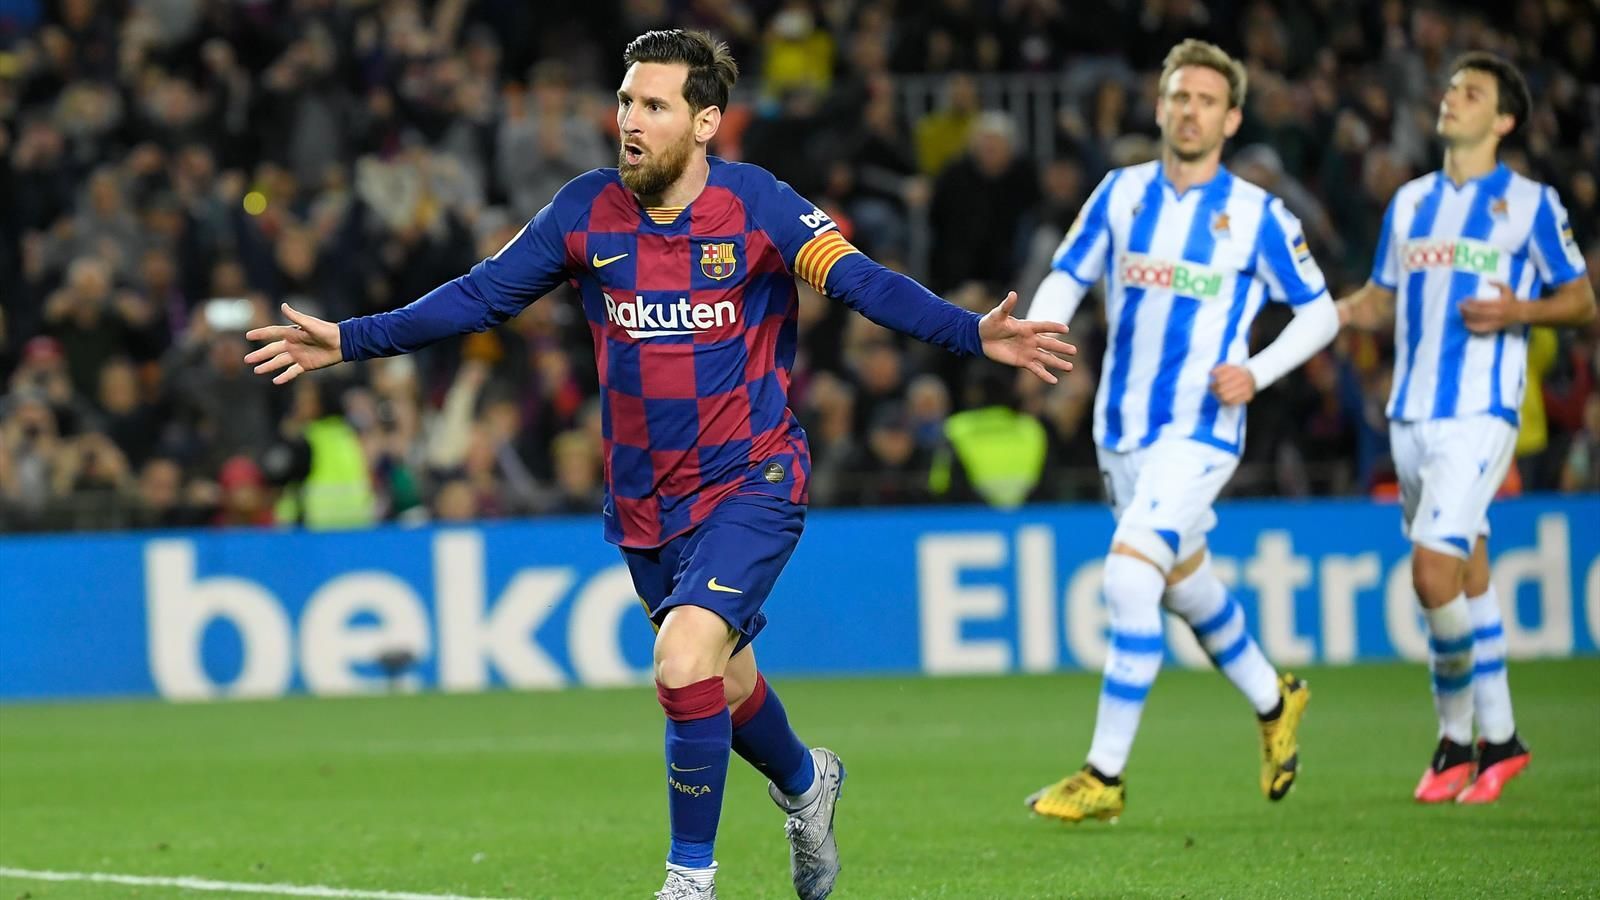 Braithwaite find Messi as an inspiration  